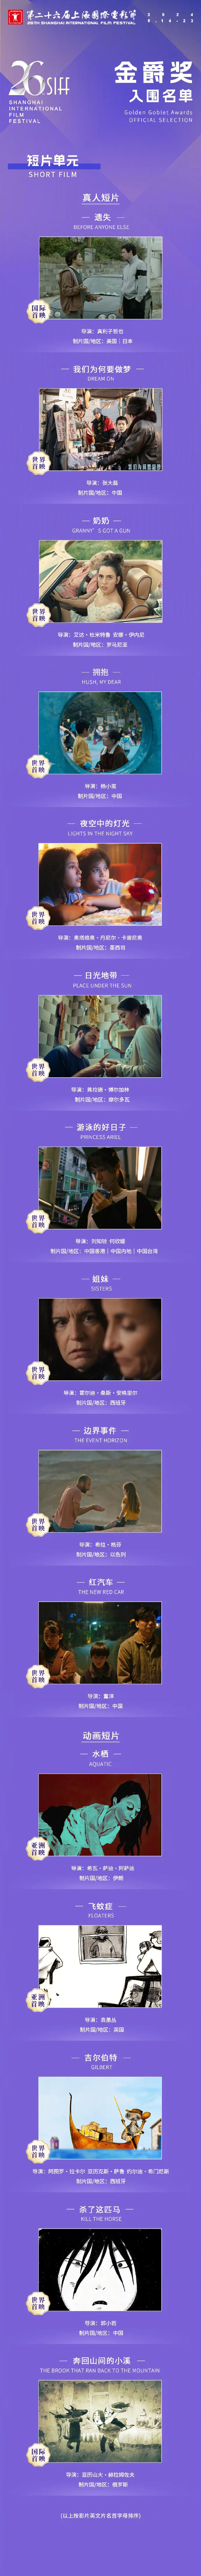 第二十六届上海国际电影节金爵奖入围名单公布  第6张